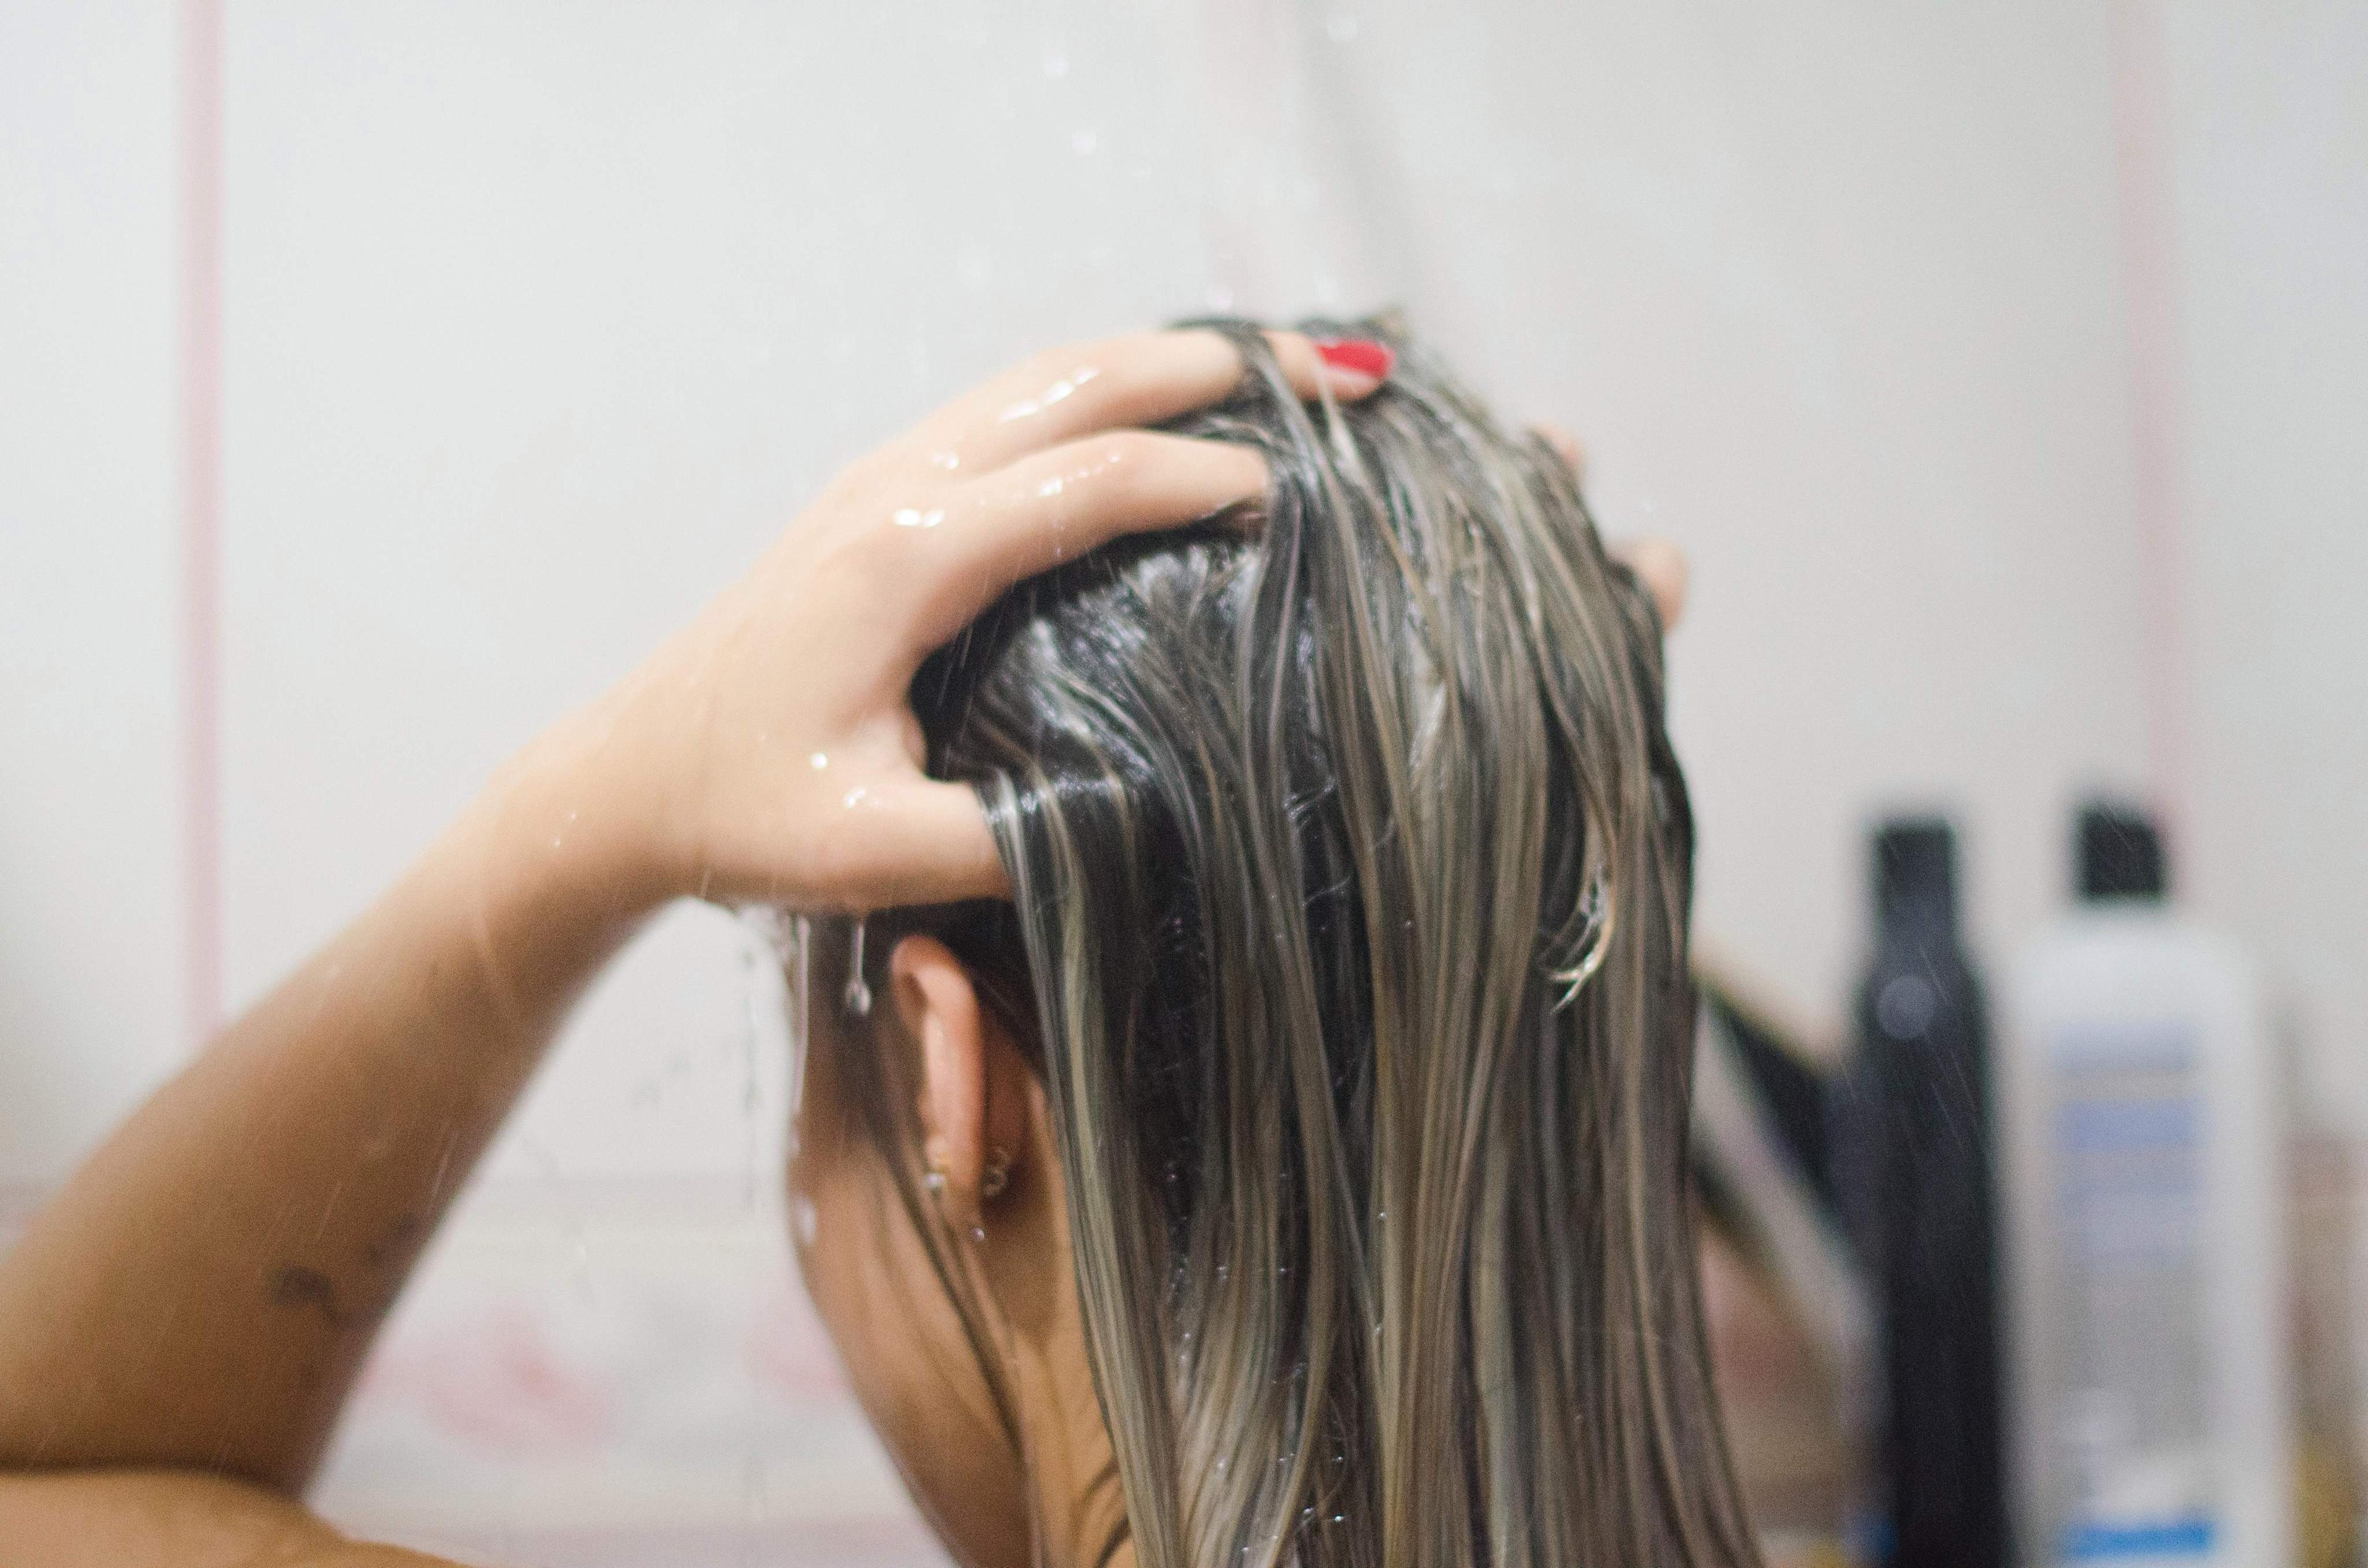 Koristite šampone dizajnirane upravo za obojenu kosu - Avaz